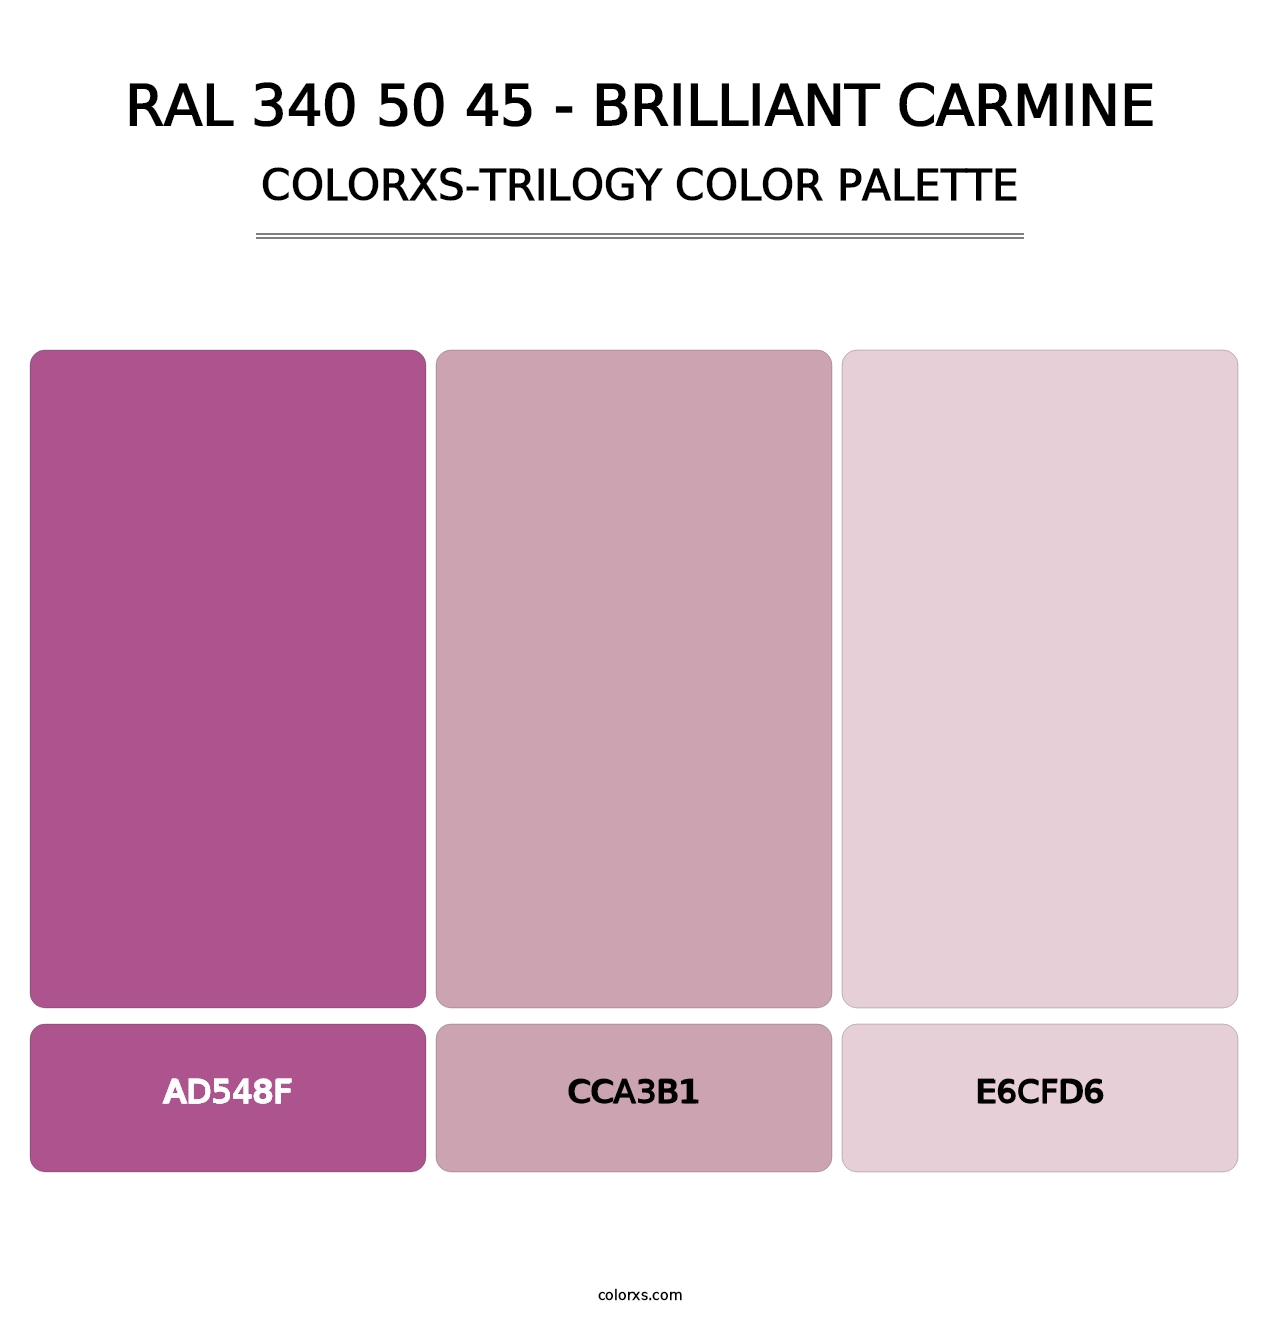 RAL 340 50 45 - Brilliant Carmine - Colorxs Trilogy Palette